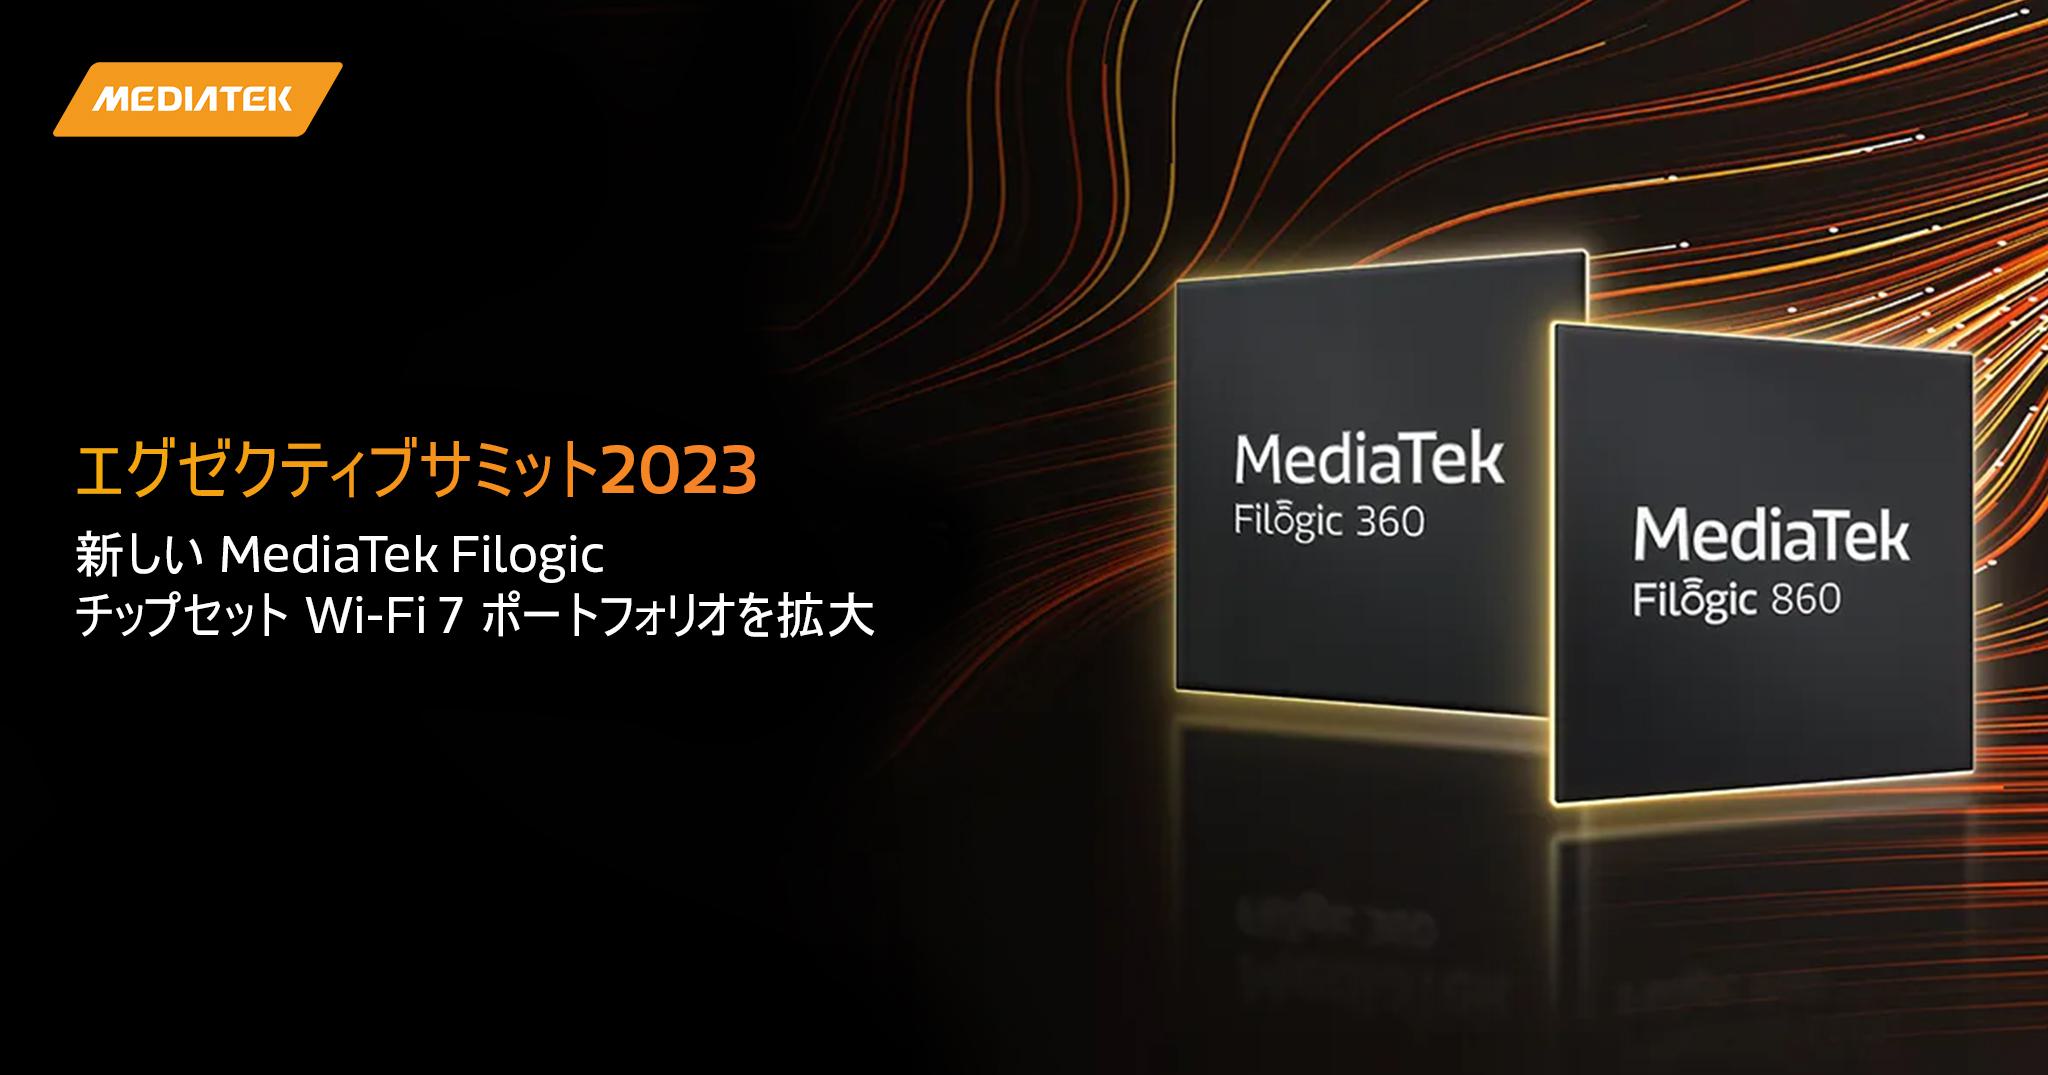 2048x1075 Mediatek Filogic 360